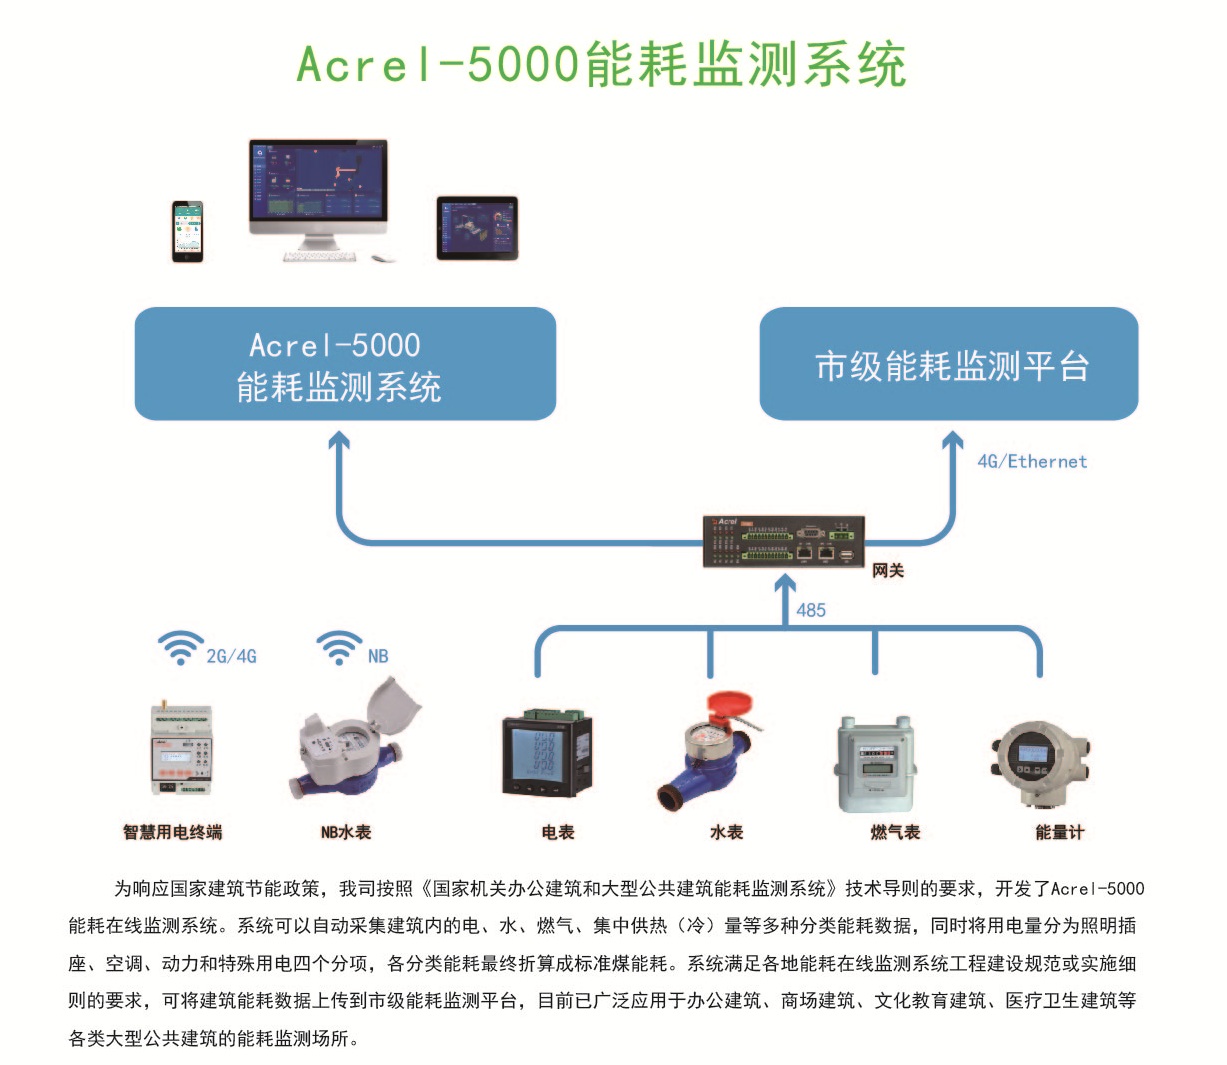 上海能耗管理系统APP 能耗监测云平台 APP推送